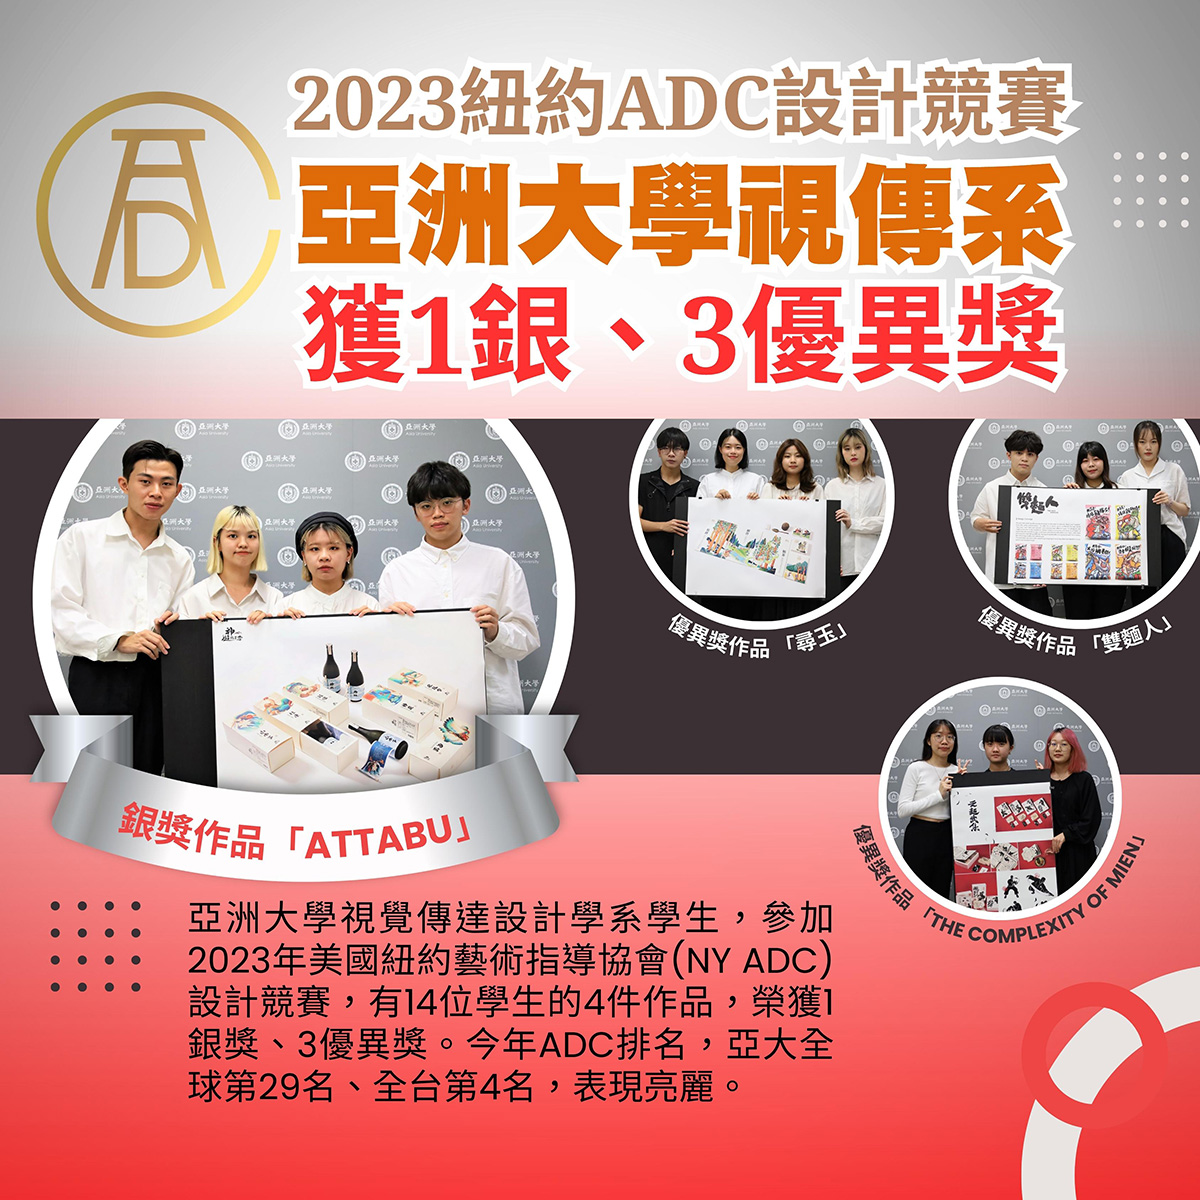 2023纽约ADC设计竞赛 亚洲大学视传系获1银、3优异奖